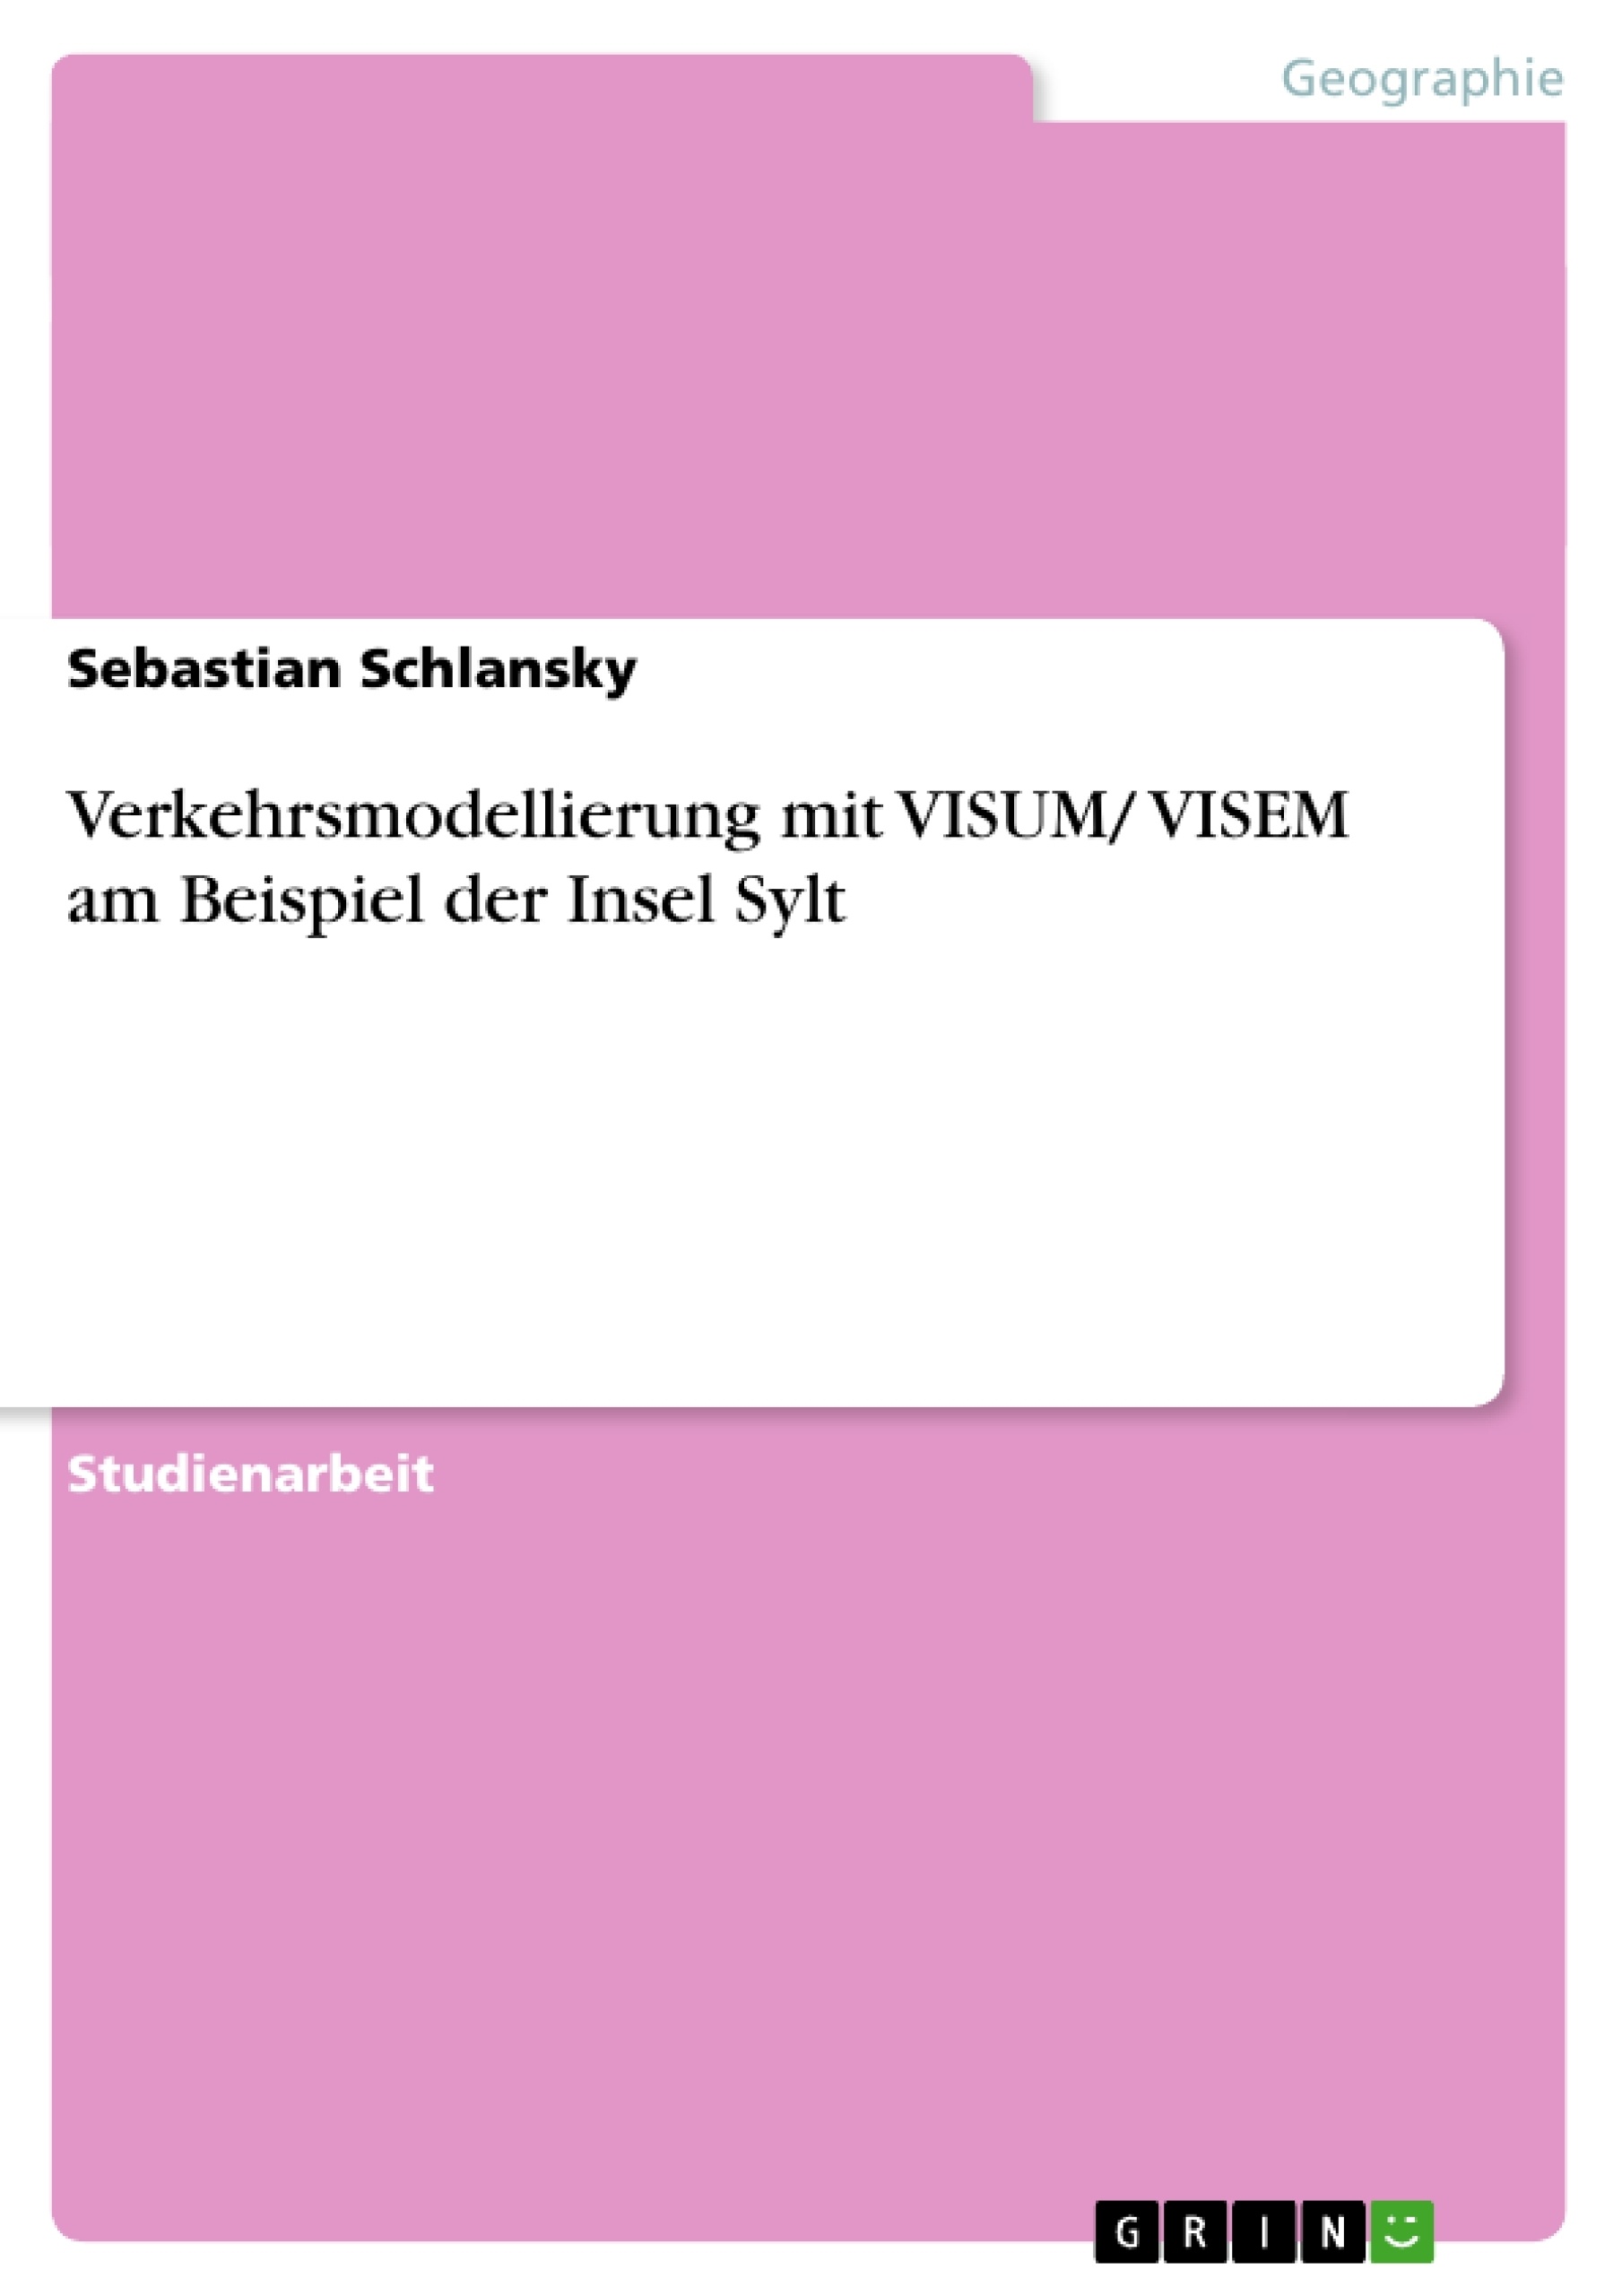 Titre: Verkehrsmodellierung mit VISUM/ VISEM am Beispiel der Insel Sylt